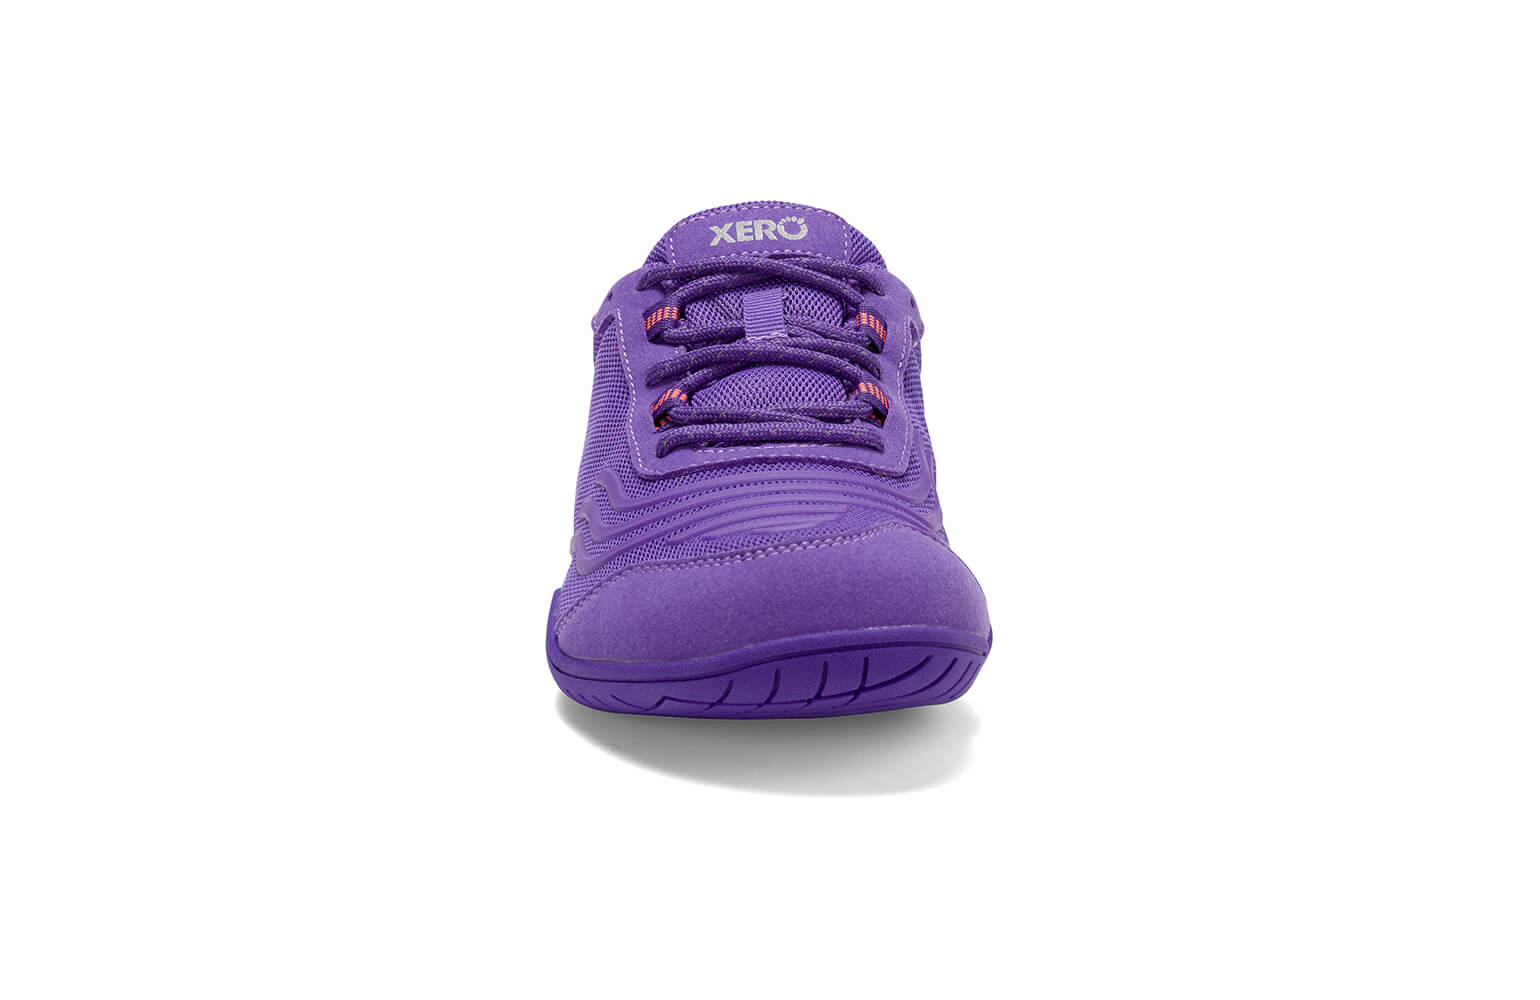  Mujer Get Fit Caminar Go Sport Athletic Gimnasio Malla Zapato  Correr Correr Zapatillas, Púrpura, 11 B (M) US : Ropa, Zapatos y Joyería